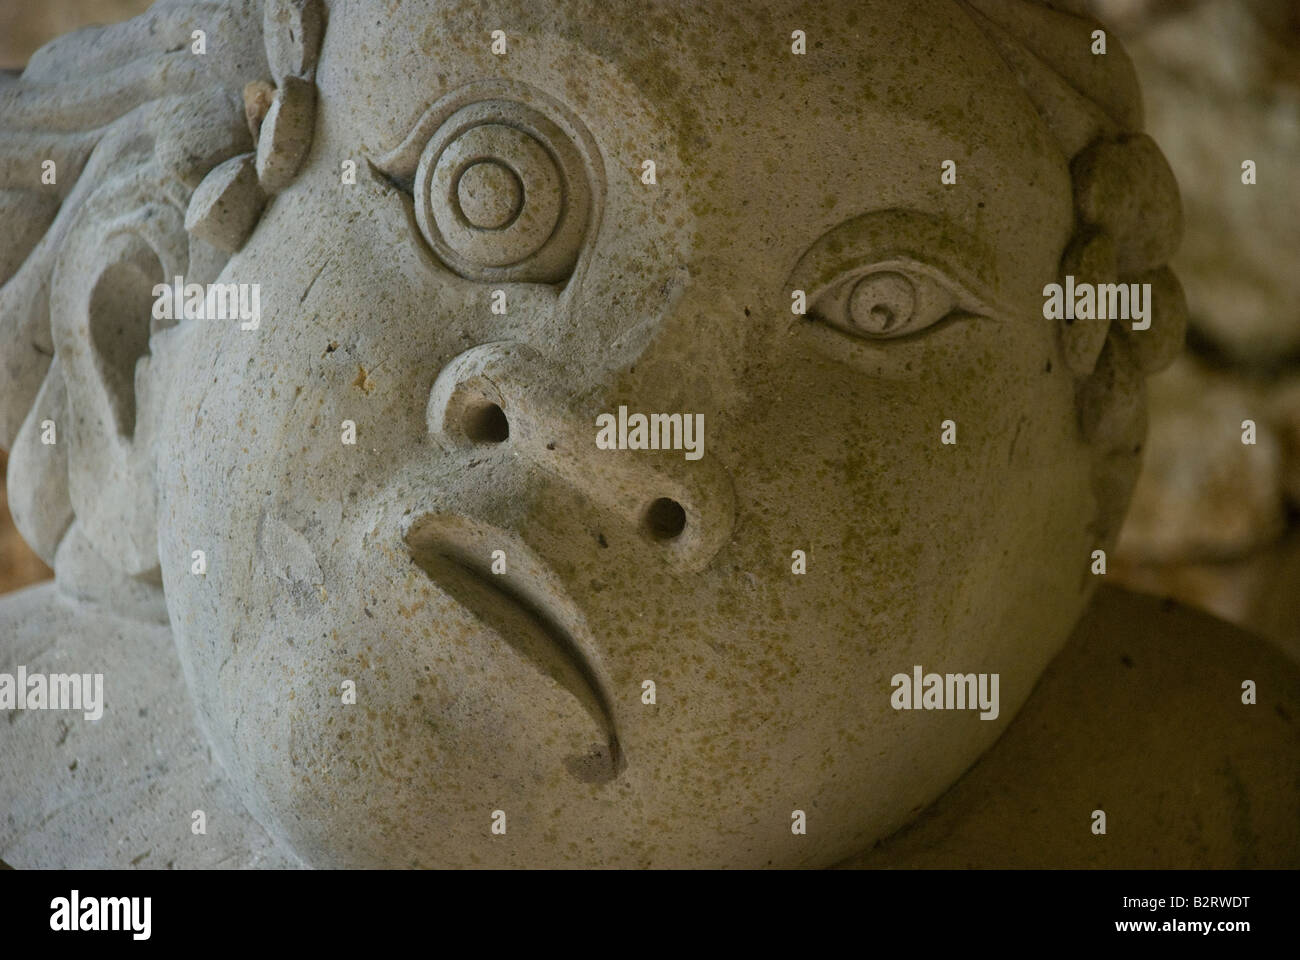 Bali, Indonesia gárgola escultura susto scary asustar a conjurar la piedra malhumorado feo ojos nariz boca grotesco hindú Foto de stock